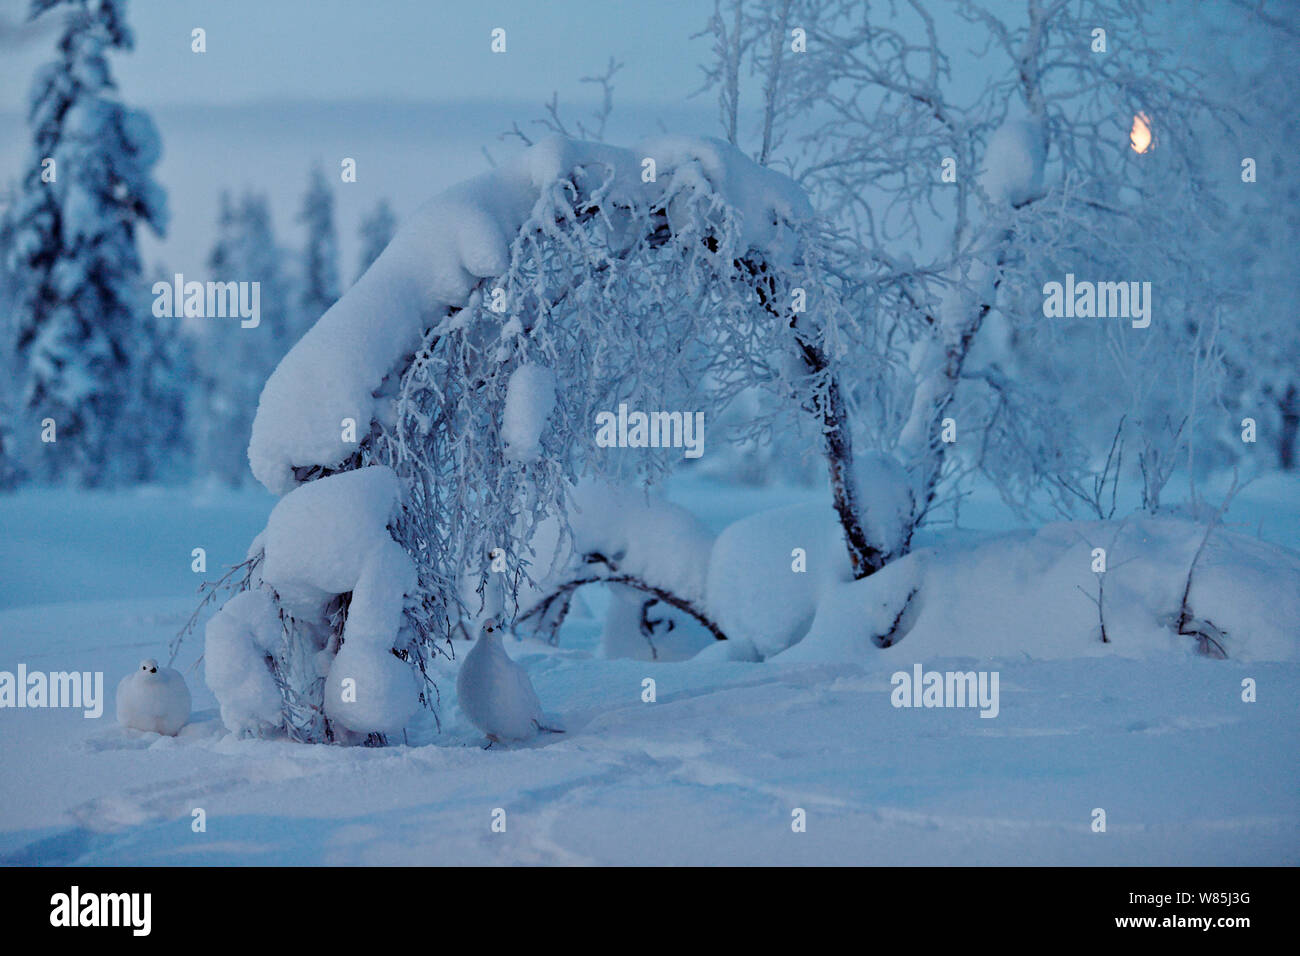 Willow grouse (Lagopus lagopus), Kiilopaa, Inari, Finland, January. Stock Photo